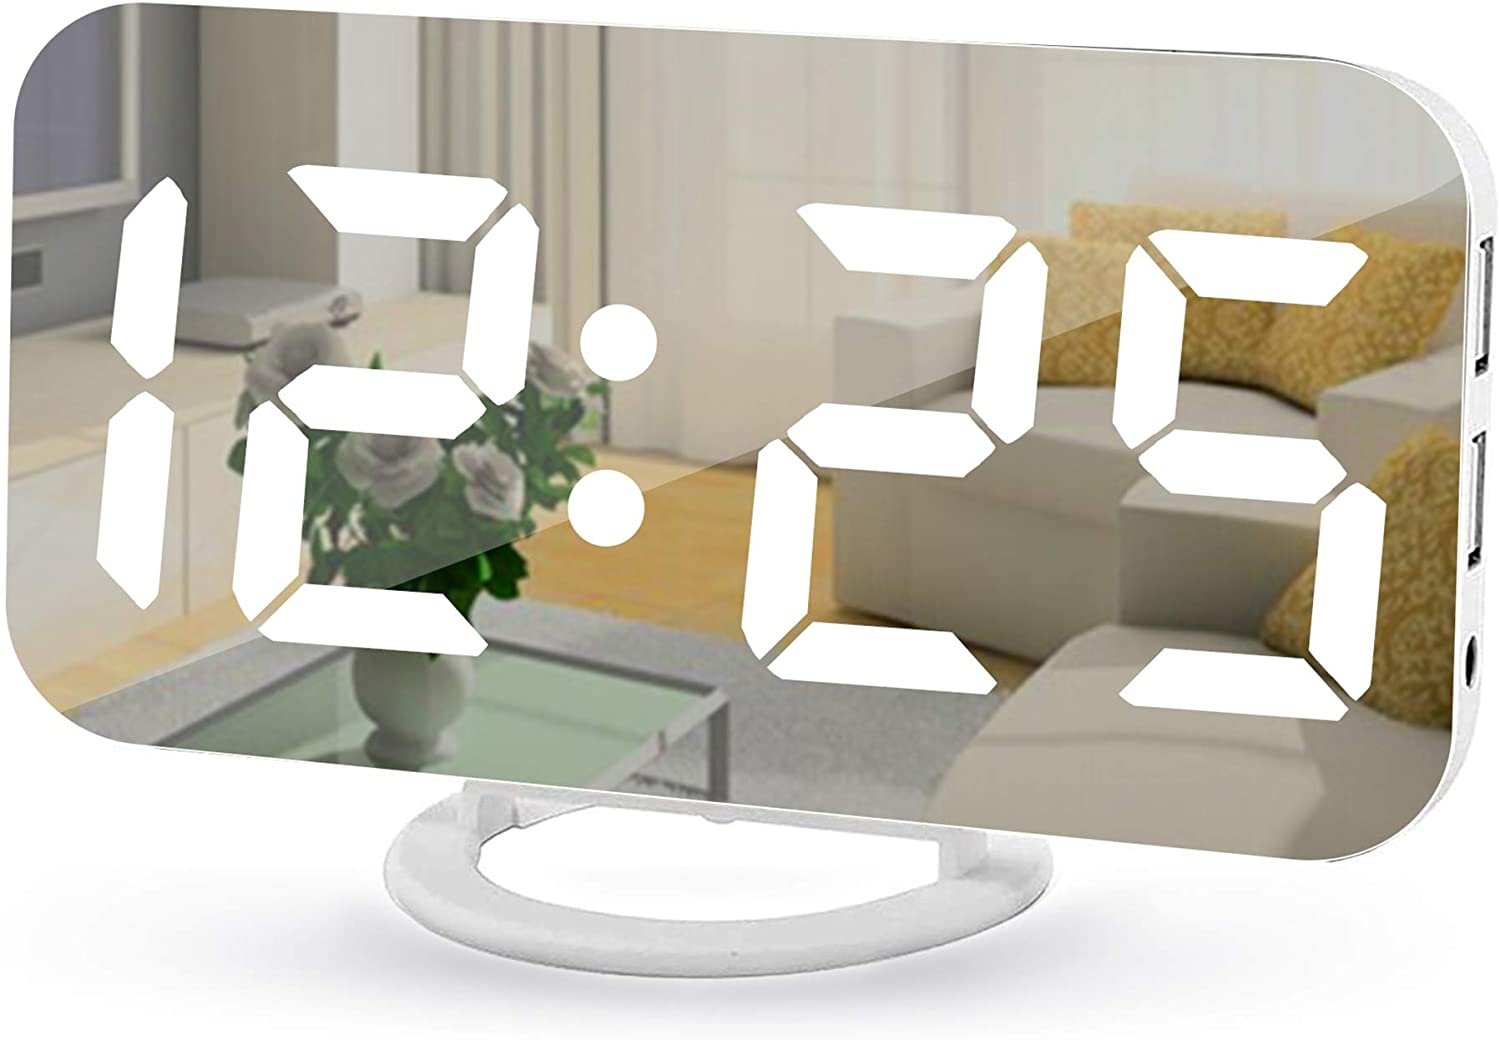 Poeroa Auto Dimmable Reflective Alarm Clock